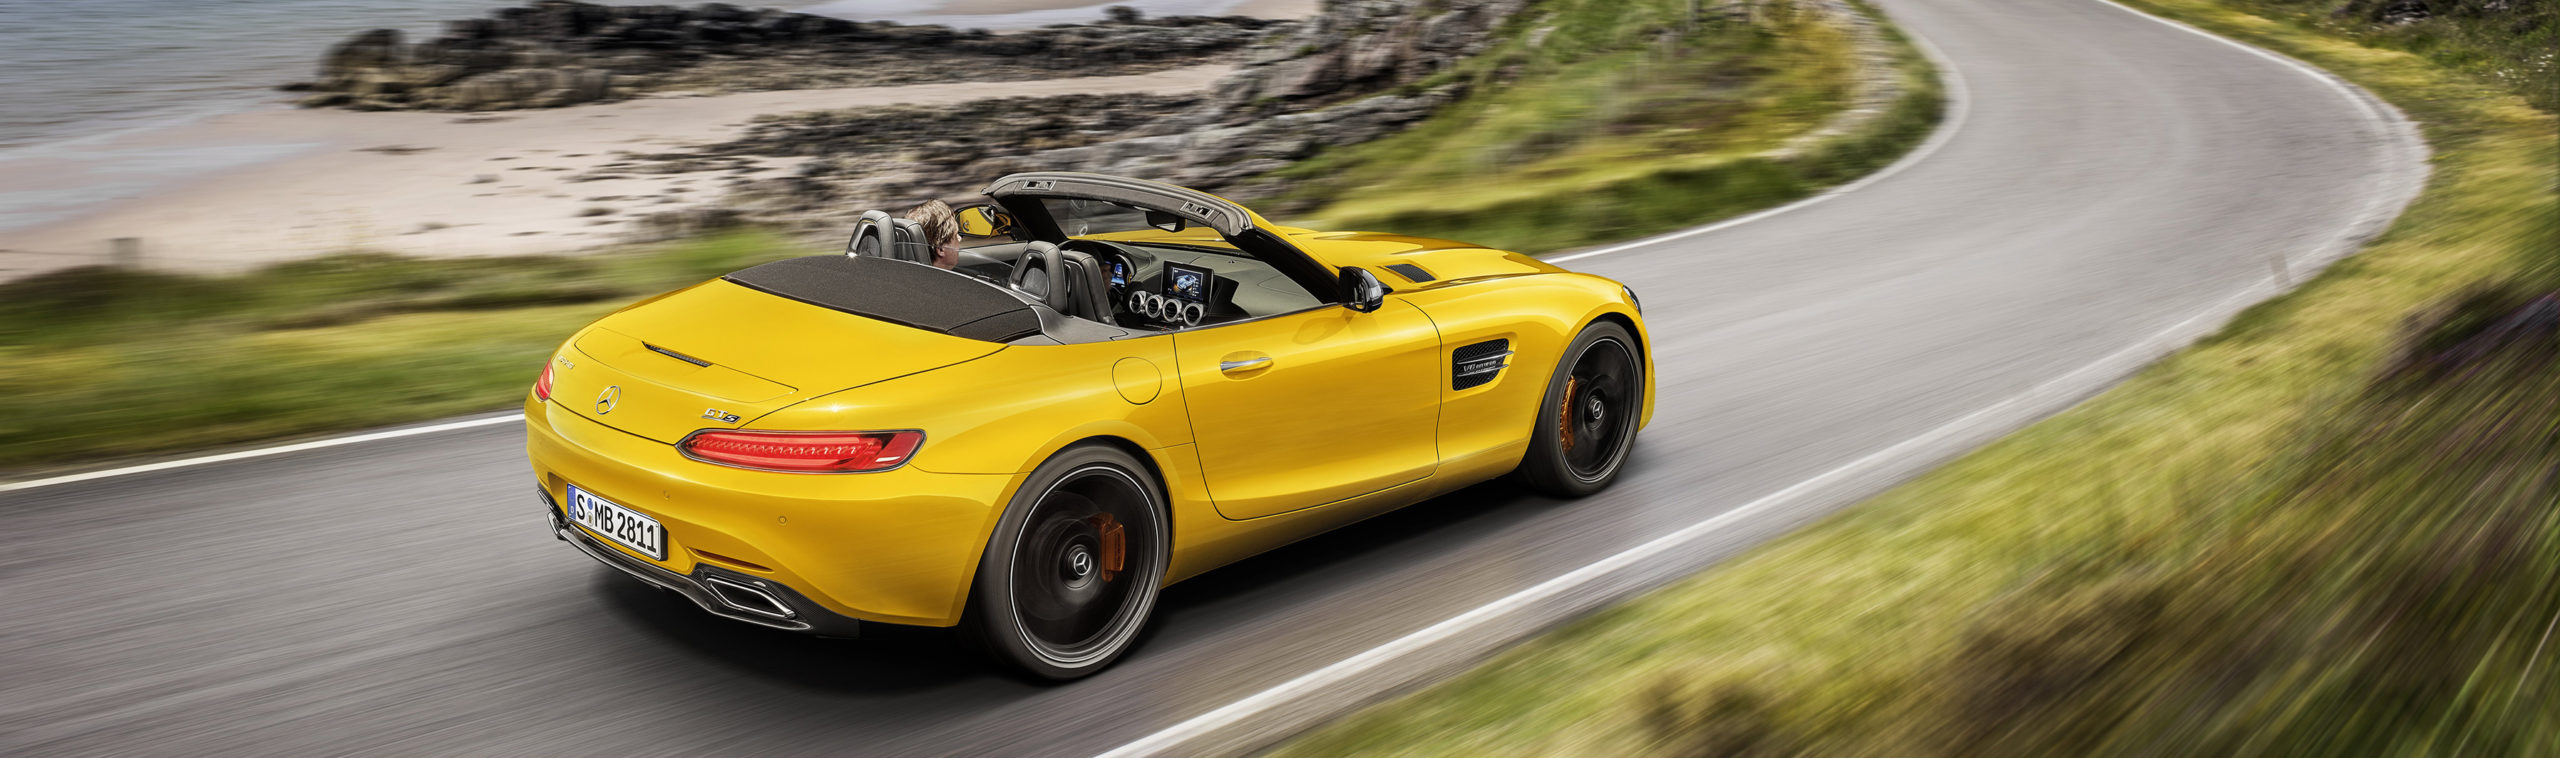 Mercedes-Benz AMG GT S Roadster ya en el mercado